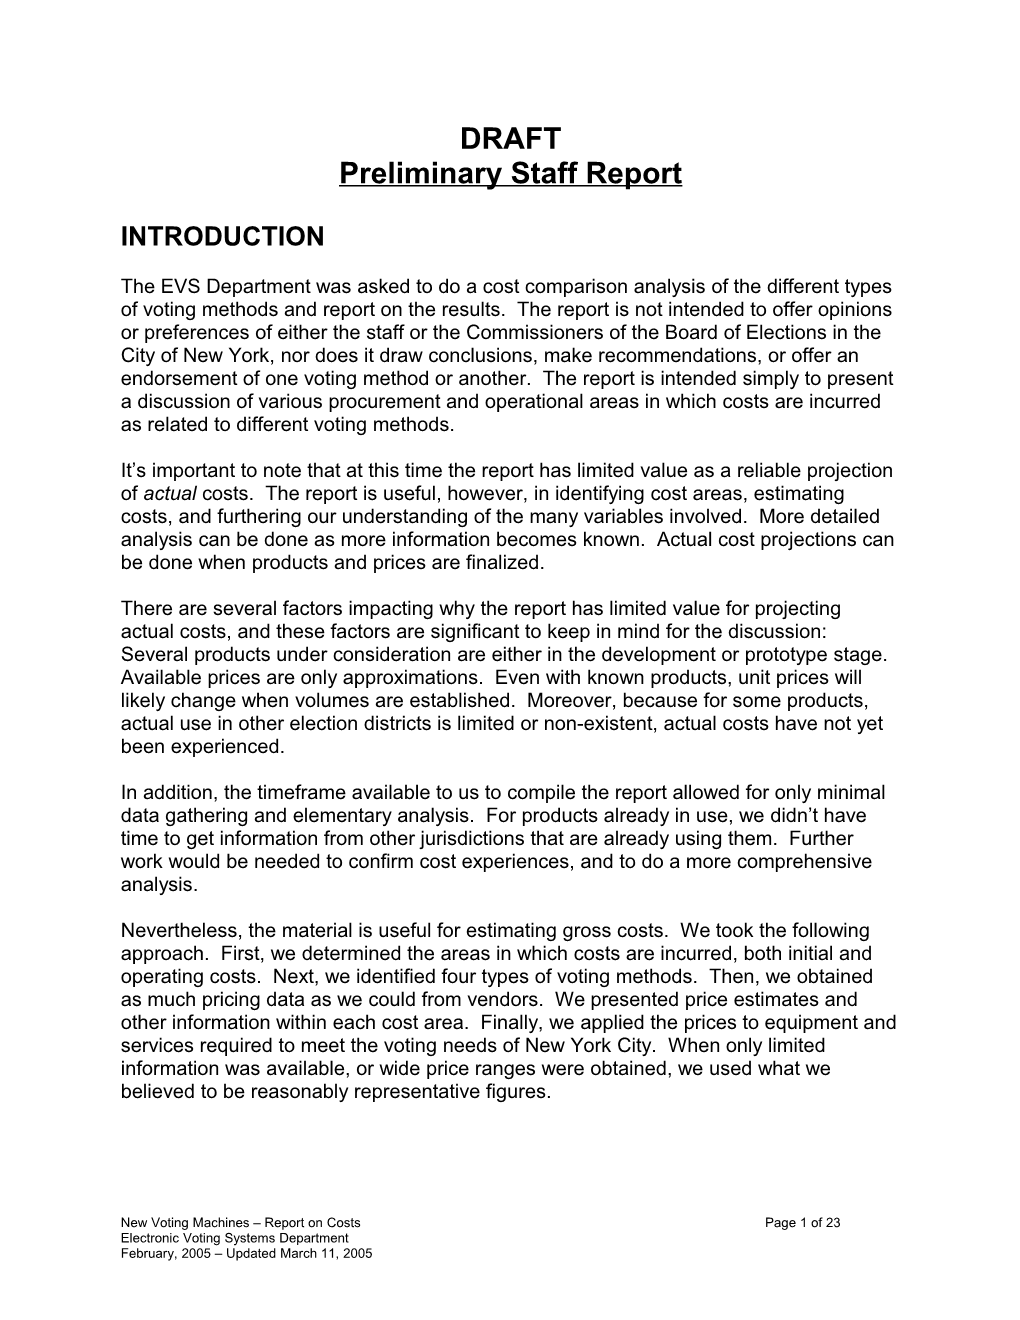 Preliminary Staff Report